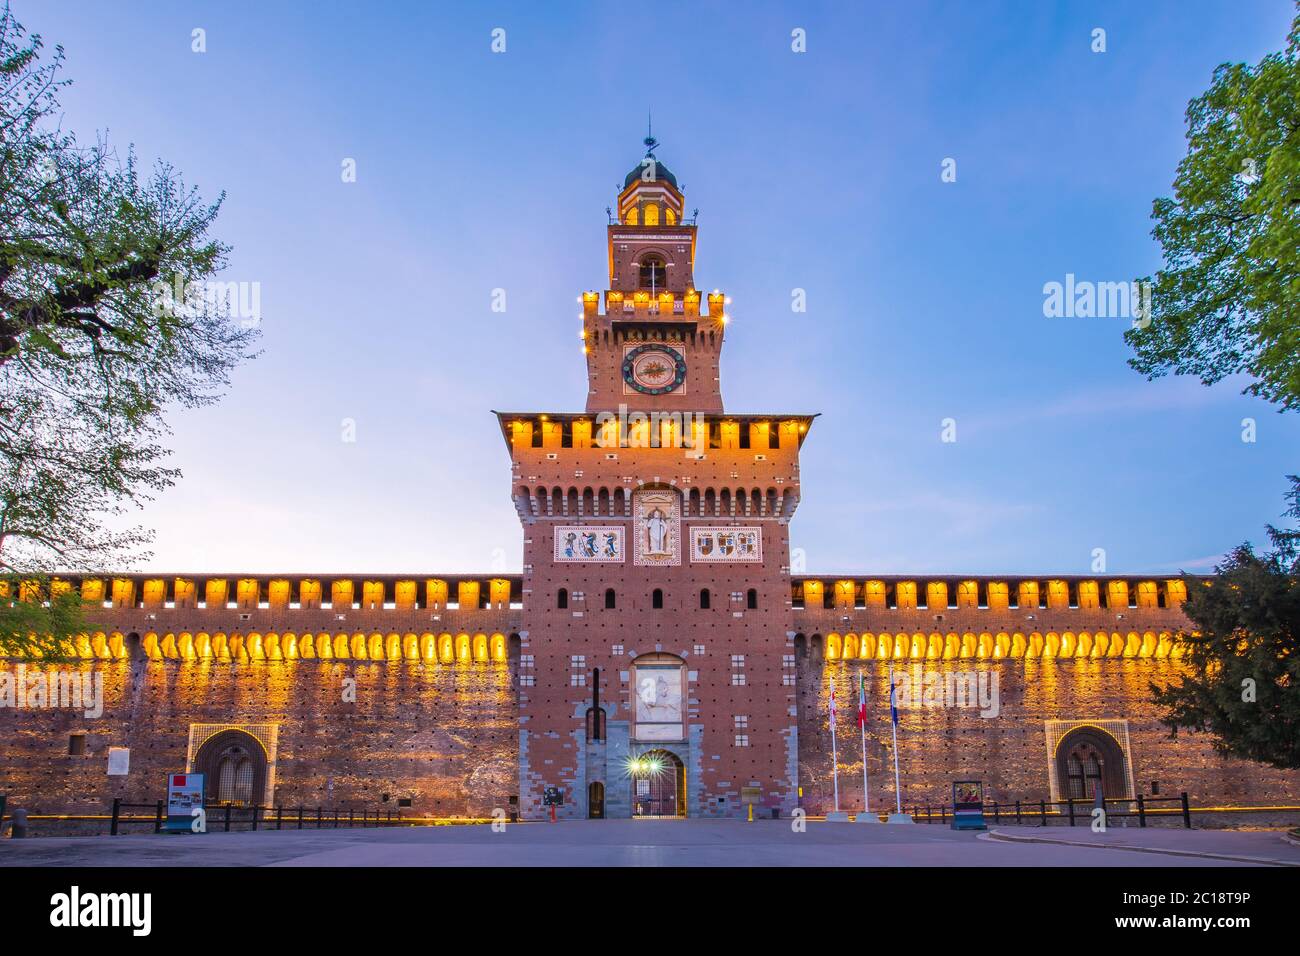 Castello Sforzesco or Sforza Castle in Milan, Italy at night Stock Photo